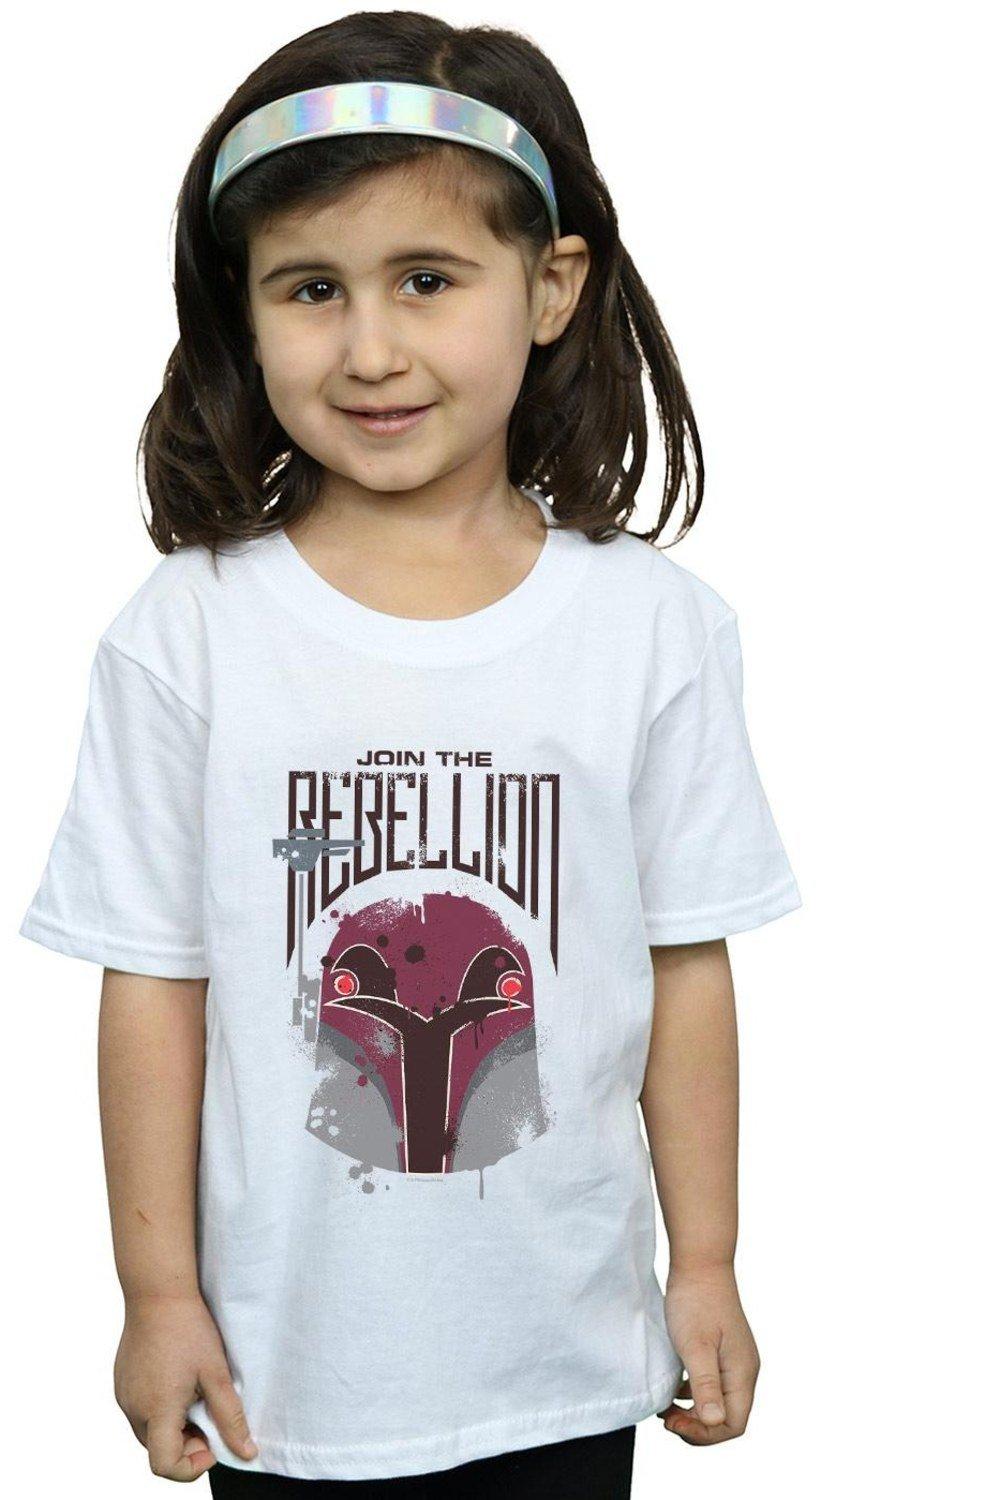 Хлопковая футболка Rebels Rebellion Star Wars, белый хлопковая футболка rebels hera star wars черный